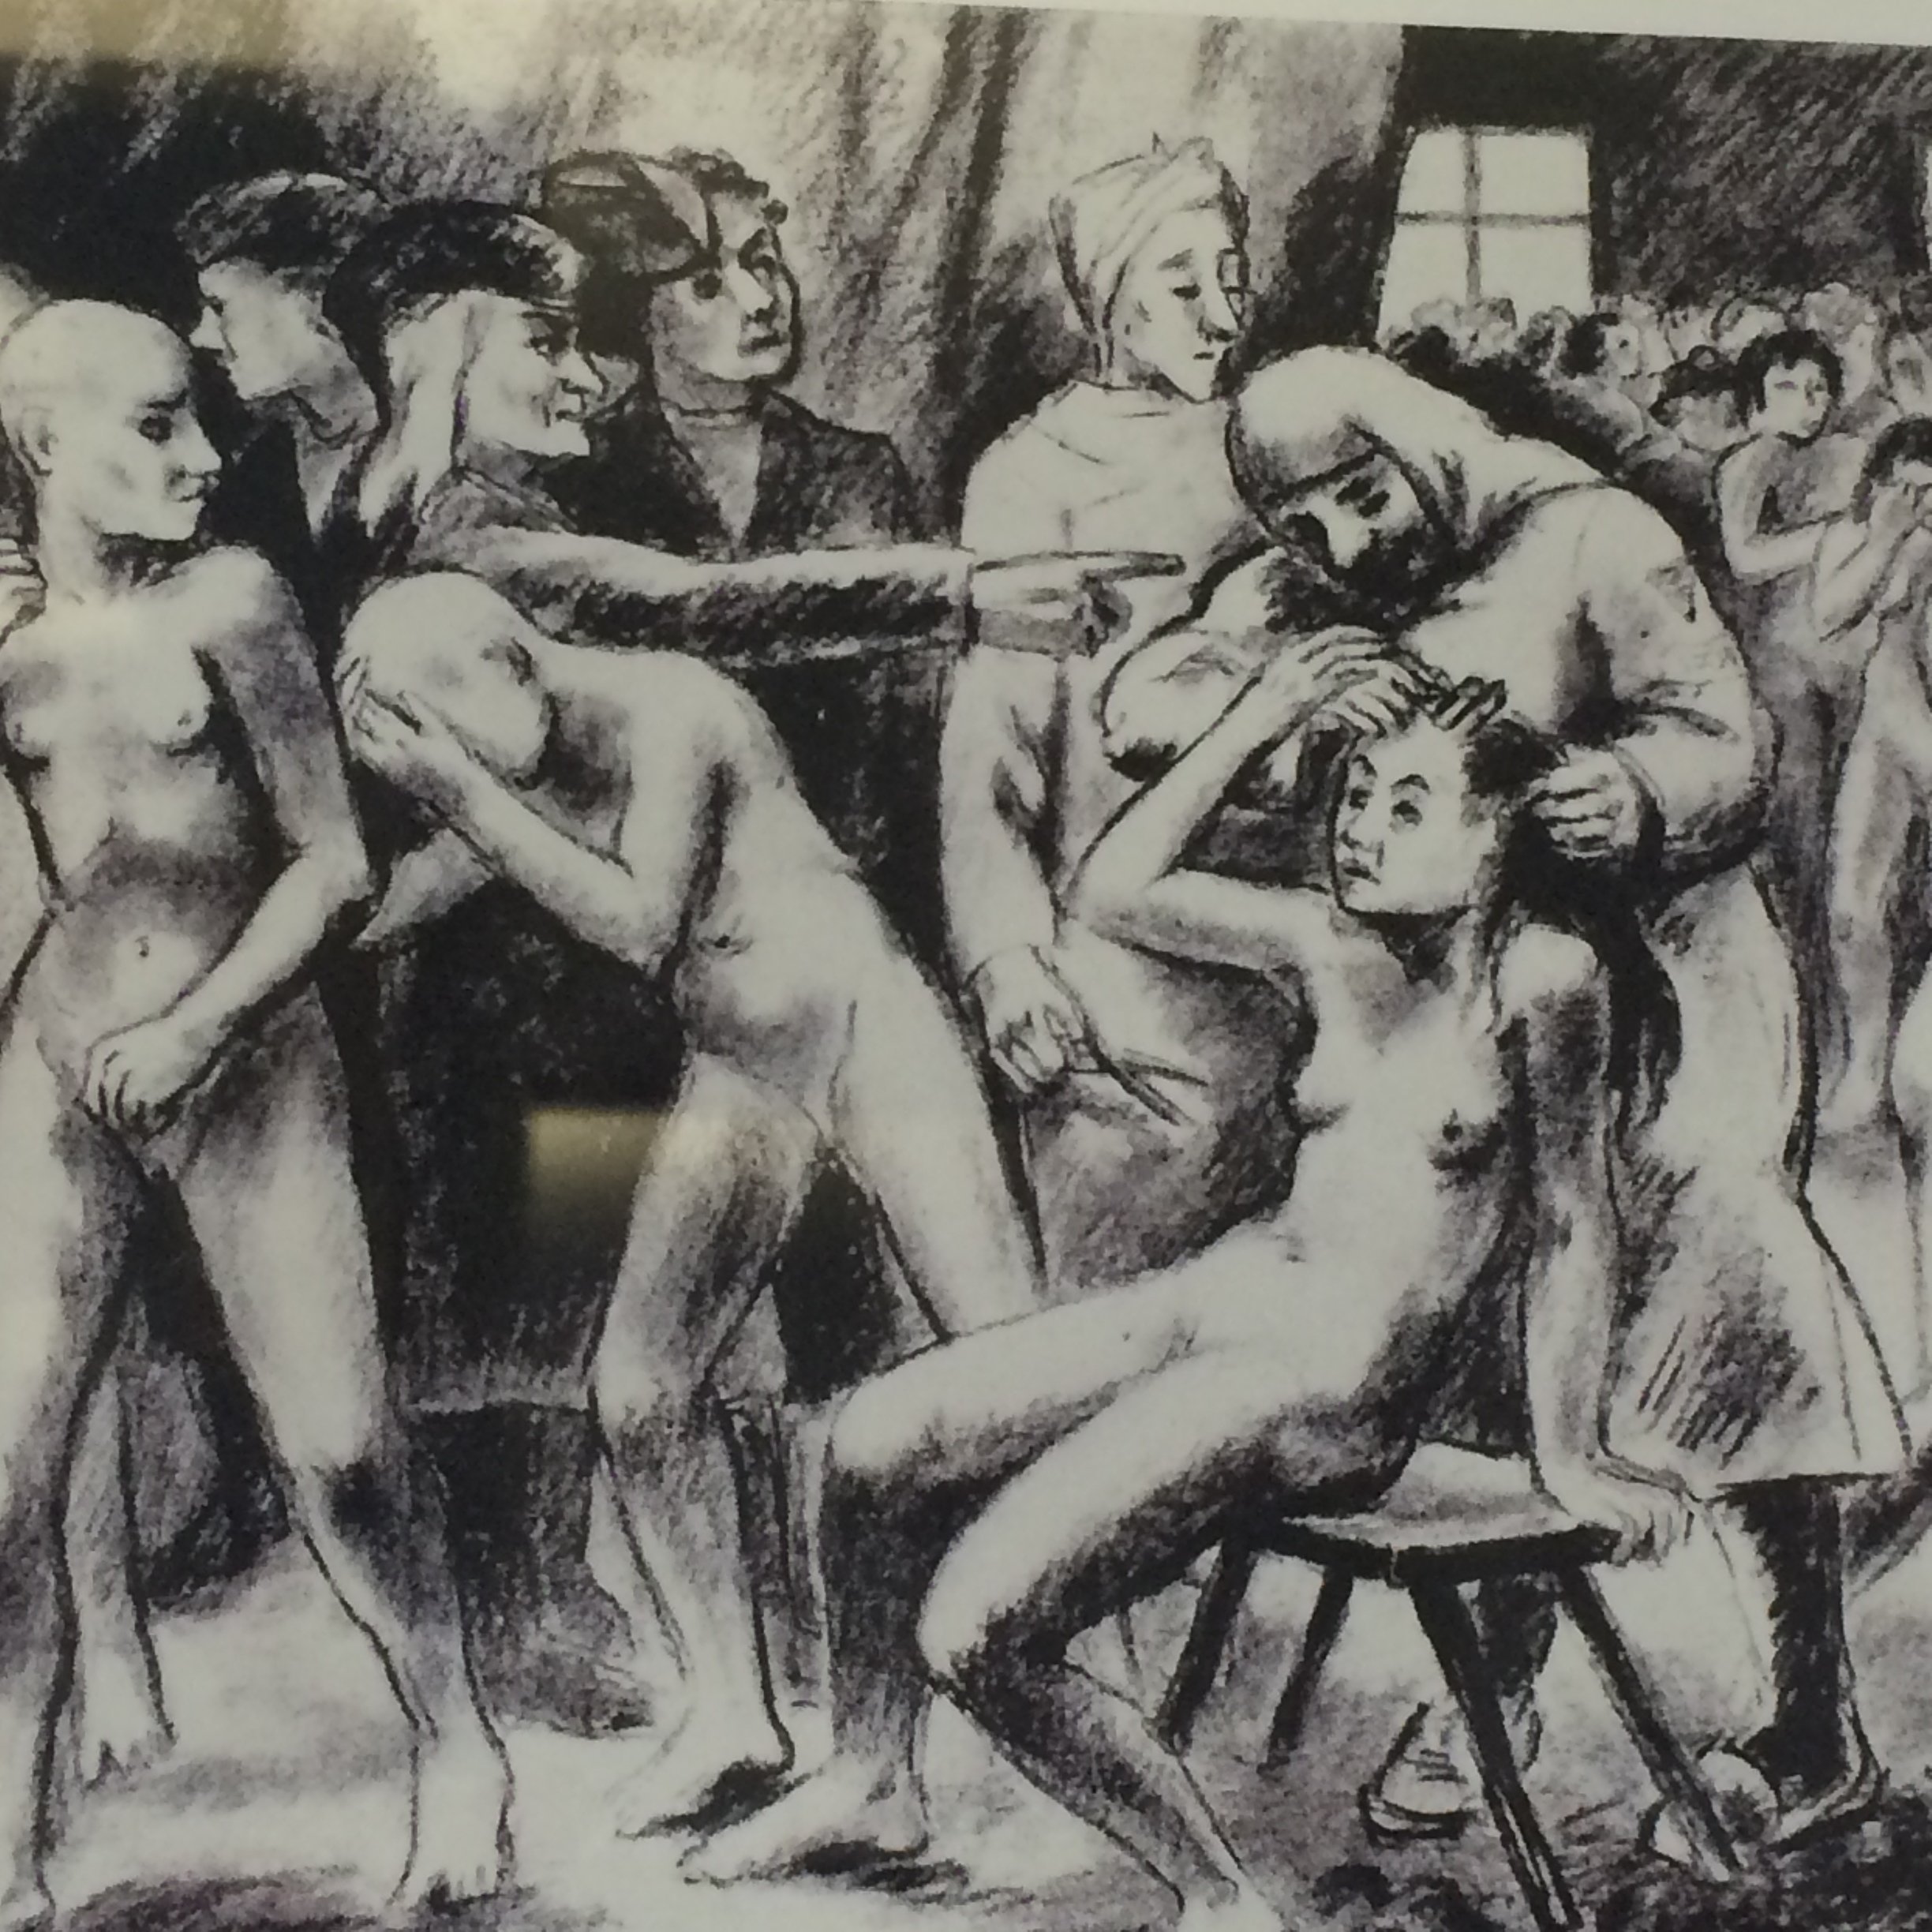 фото голых женщин в нацистских лагерях